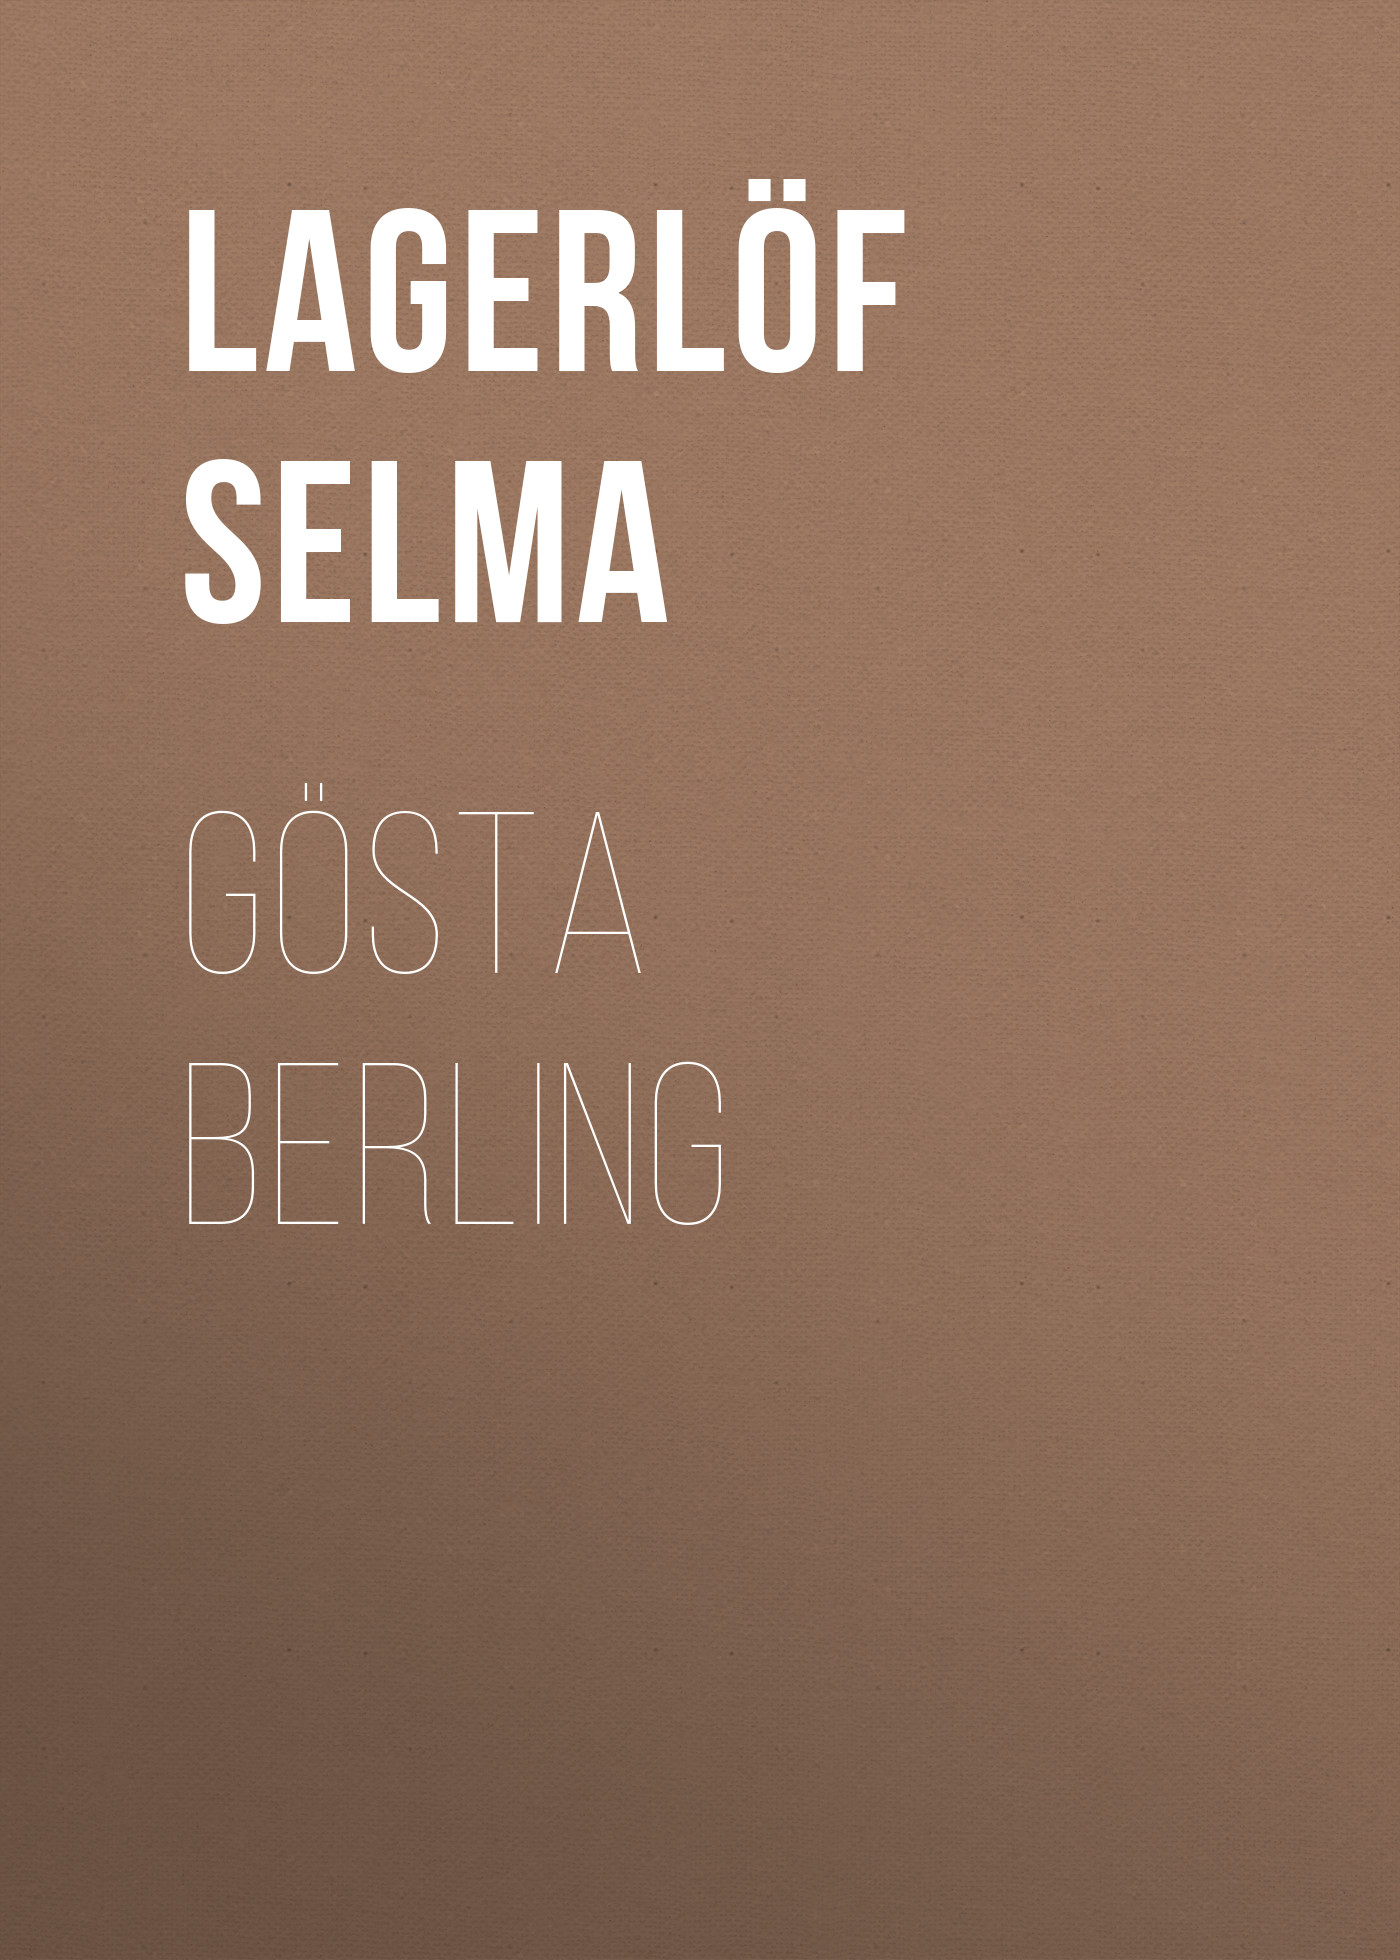 Книга Gösta Berling из серии , созданная Selma Lagerlöf, может относится к жанру Зарубежная старинная литература, Зарубежная классика. Стоимость электронной книги Gösta Berling с идентификатором 25229684 составляет 0 руб.